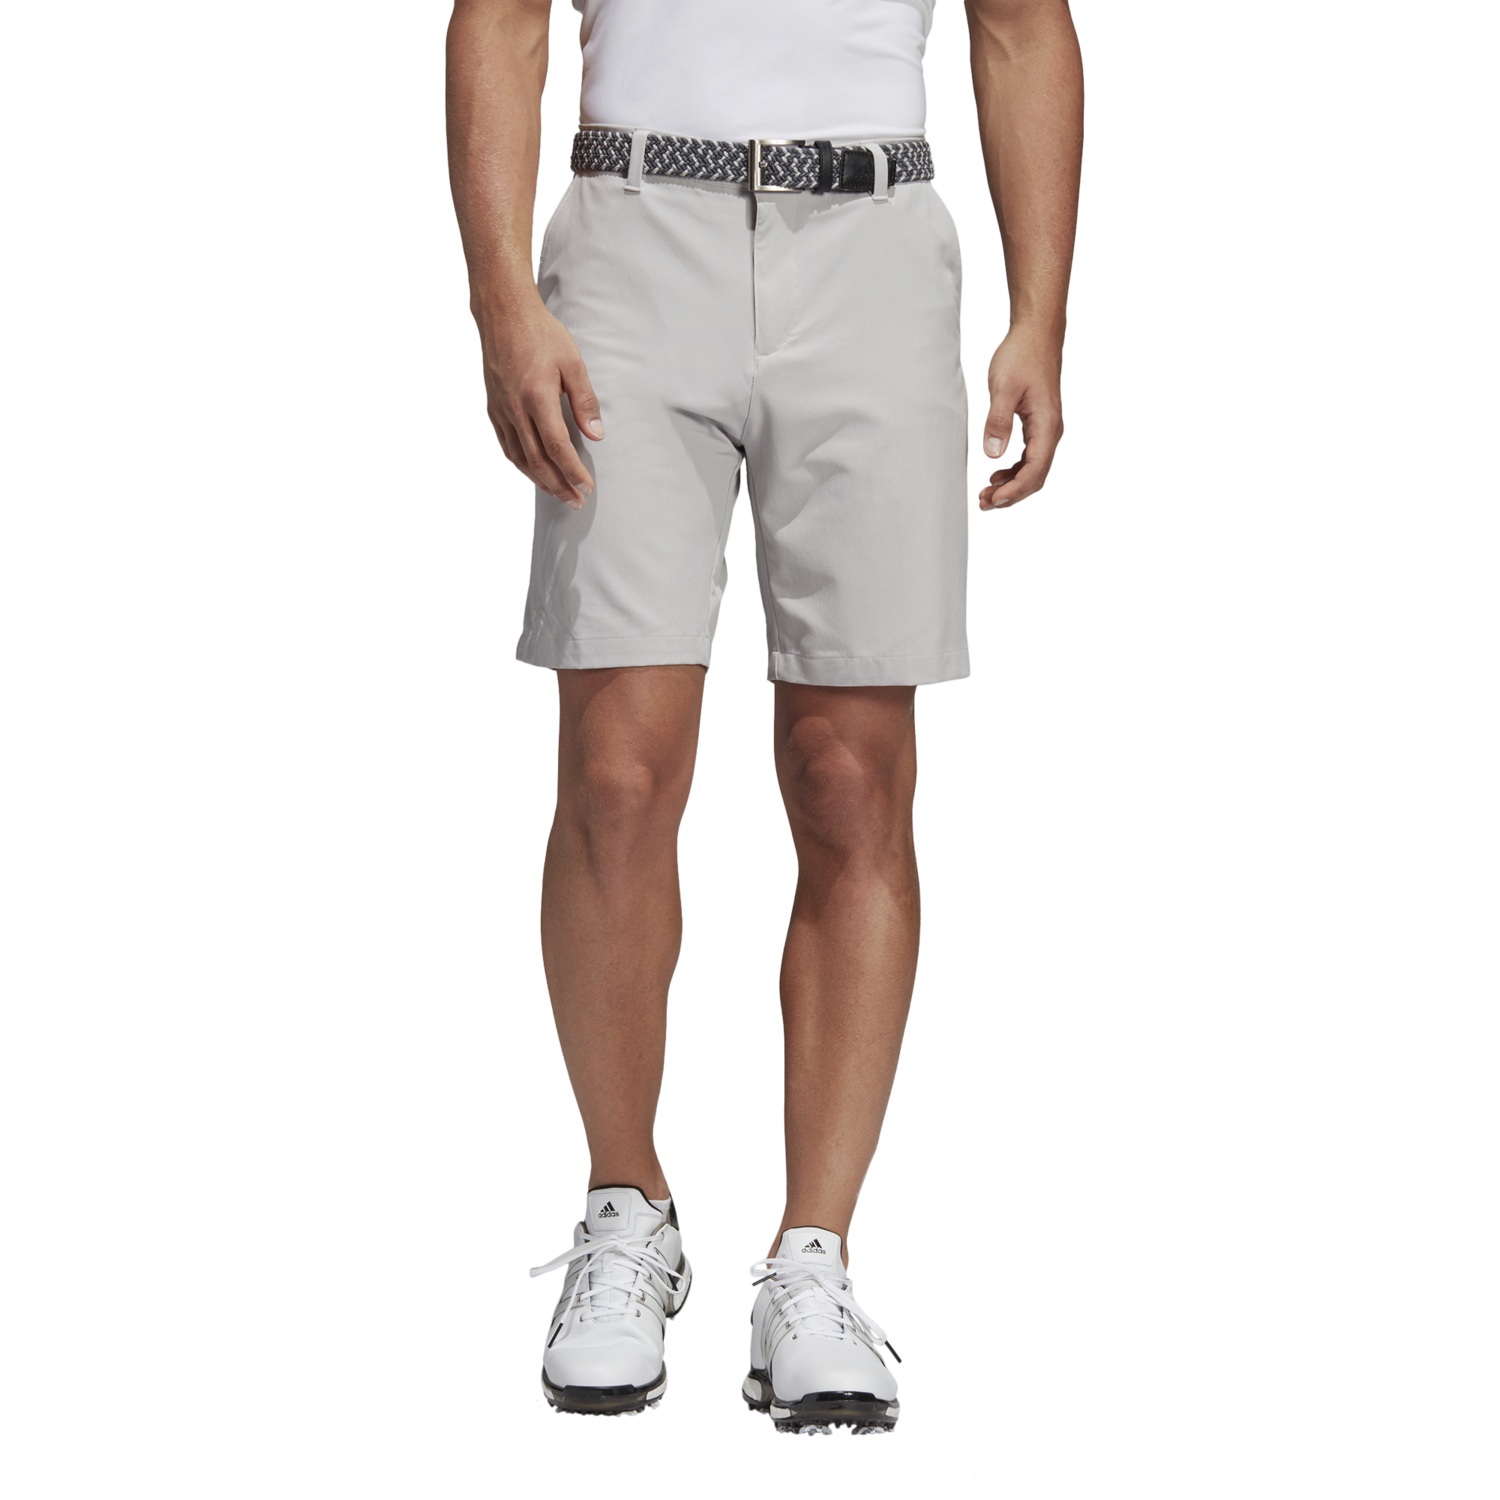 adidas golf shorts 9 inch inseam